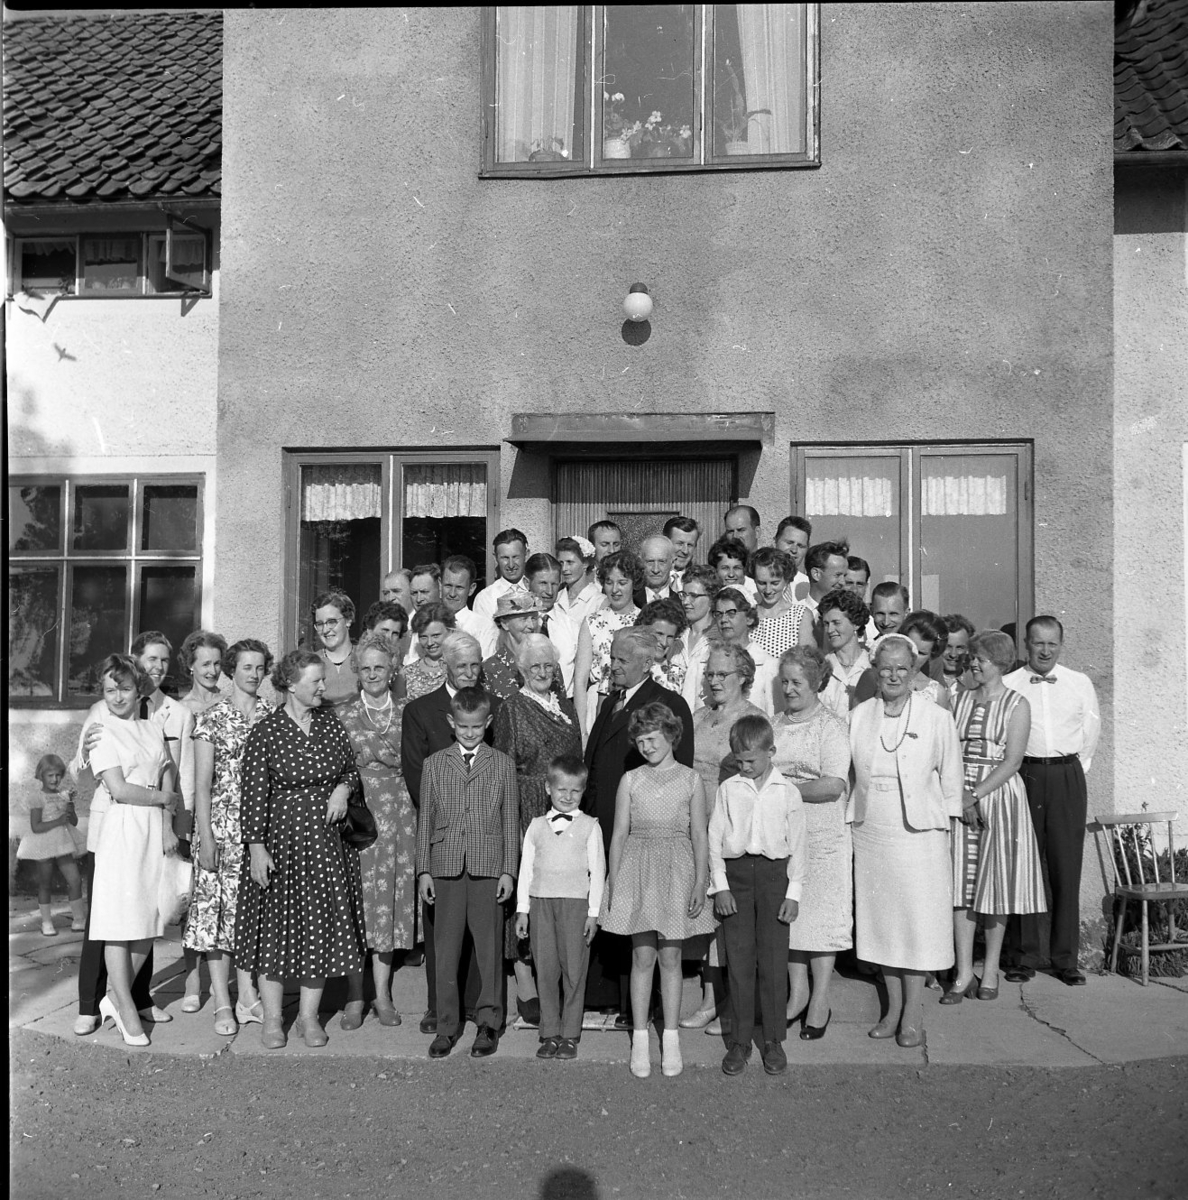 Släktmöte 1960. En stor skara människor, både barn och vuxna står uppställda framför ett hus med putsad fasad.